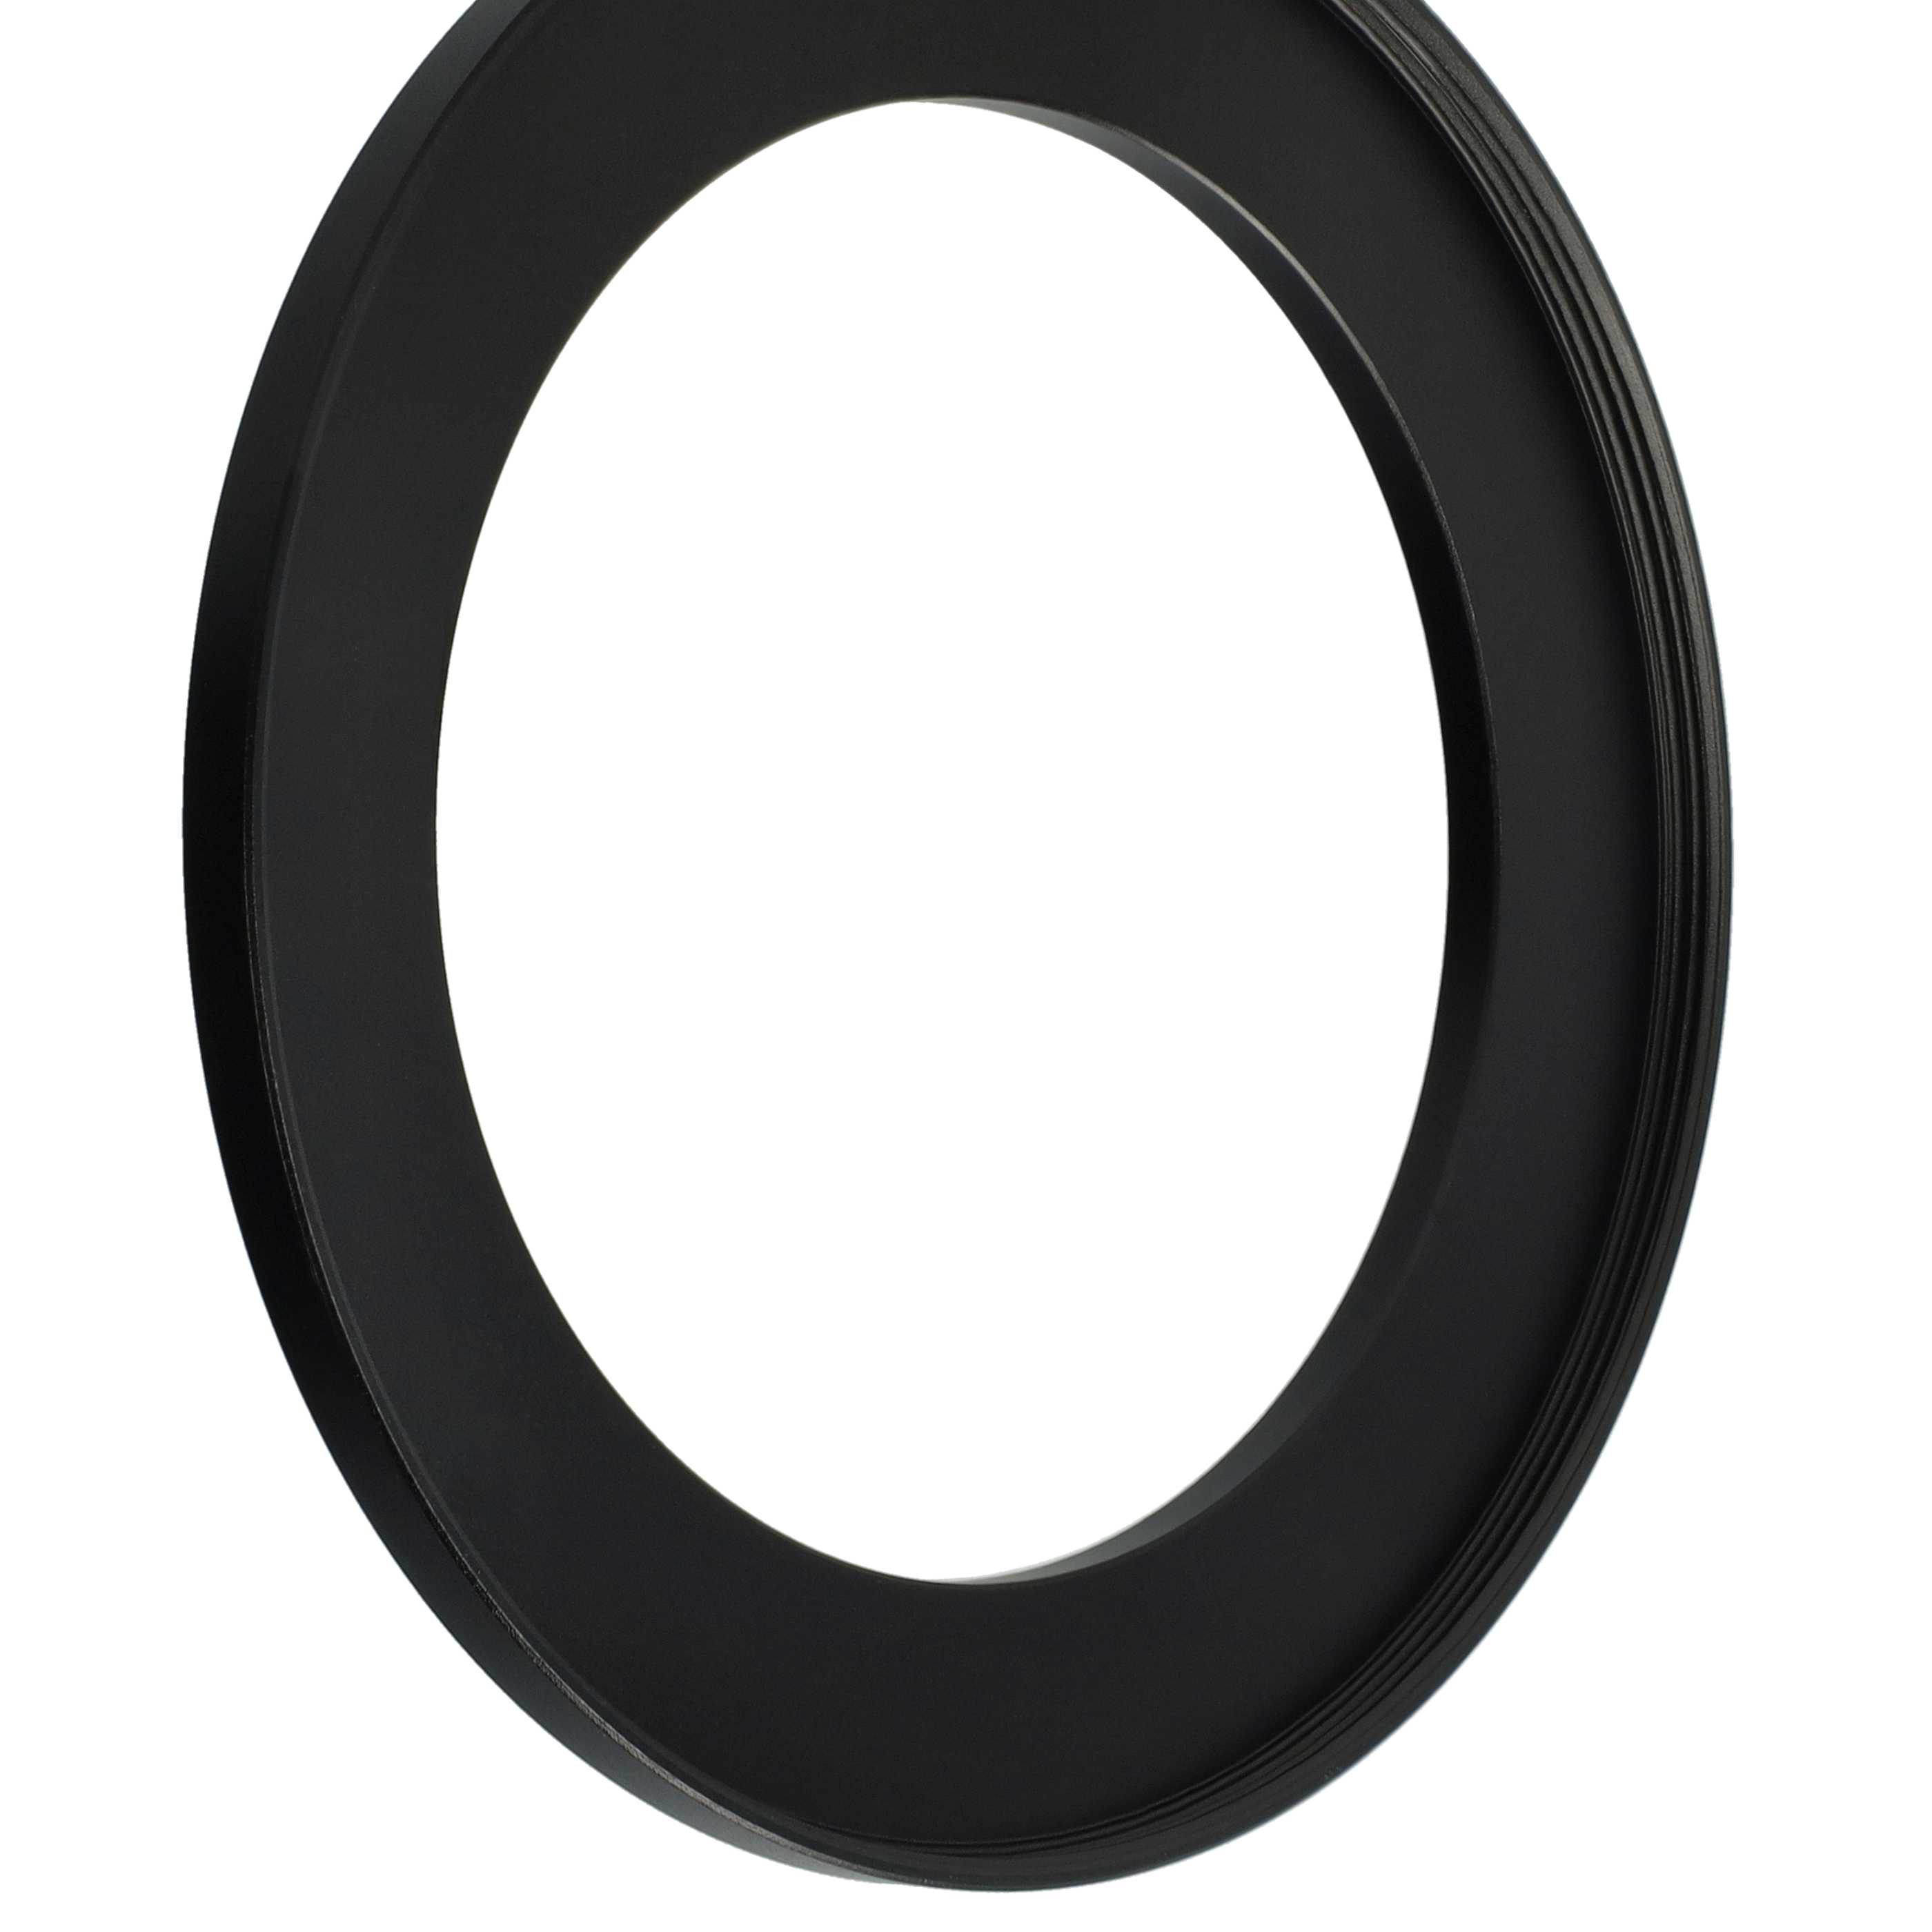 Step-Up-Ring Adapter 72 mm auf 95 mm passend für diverse Kamera-Objektive - Filteradapter